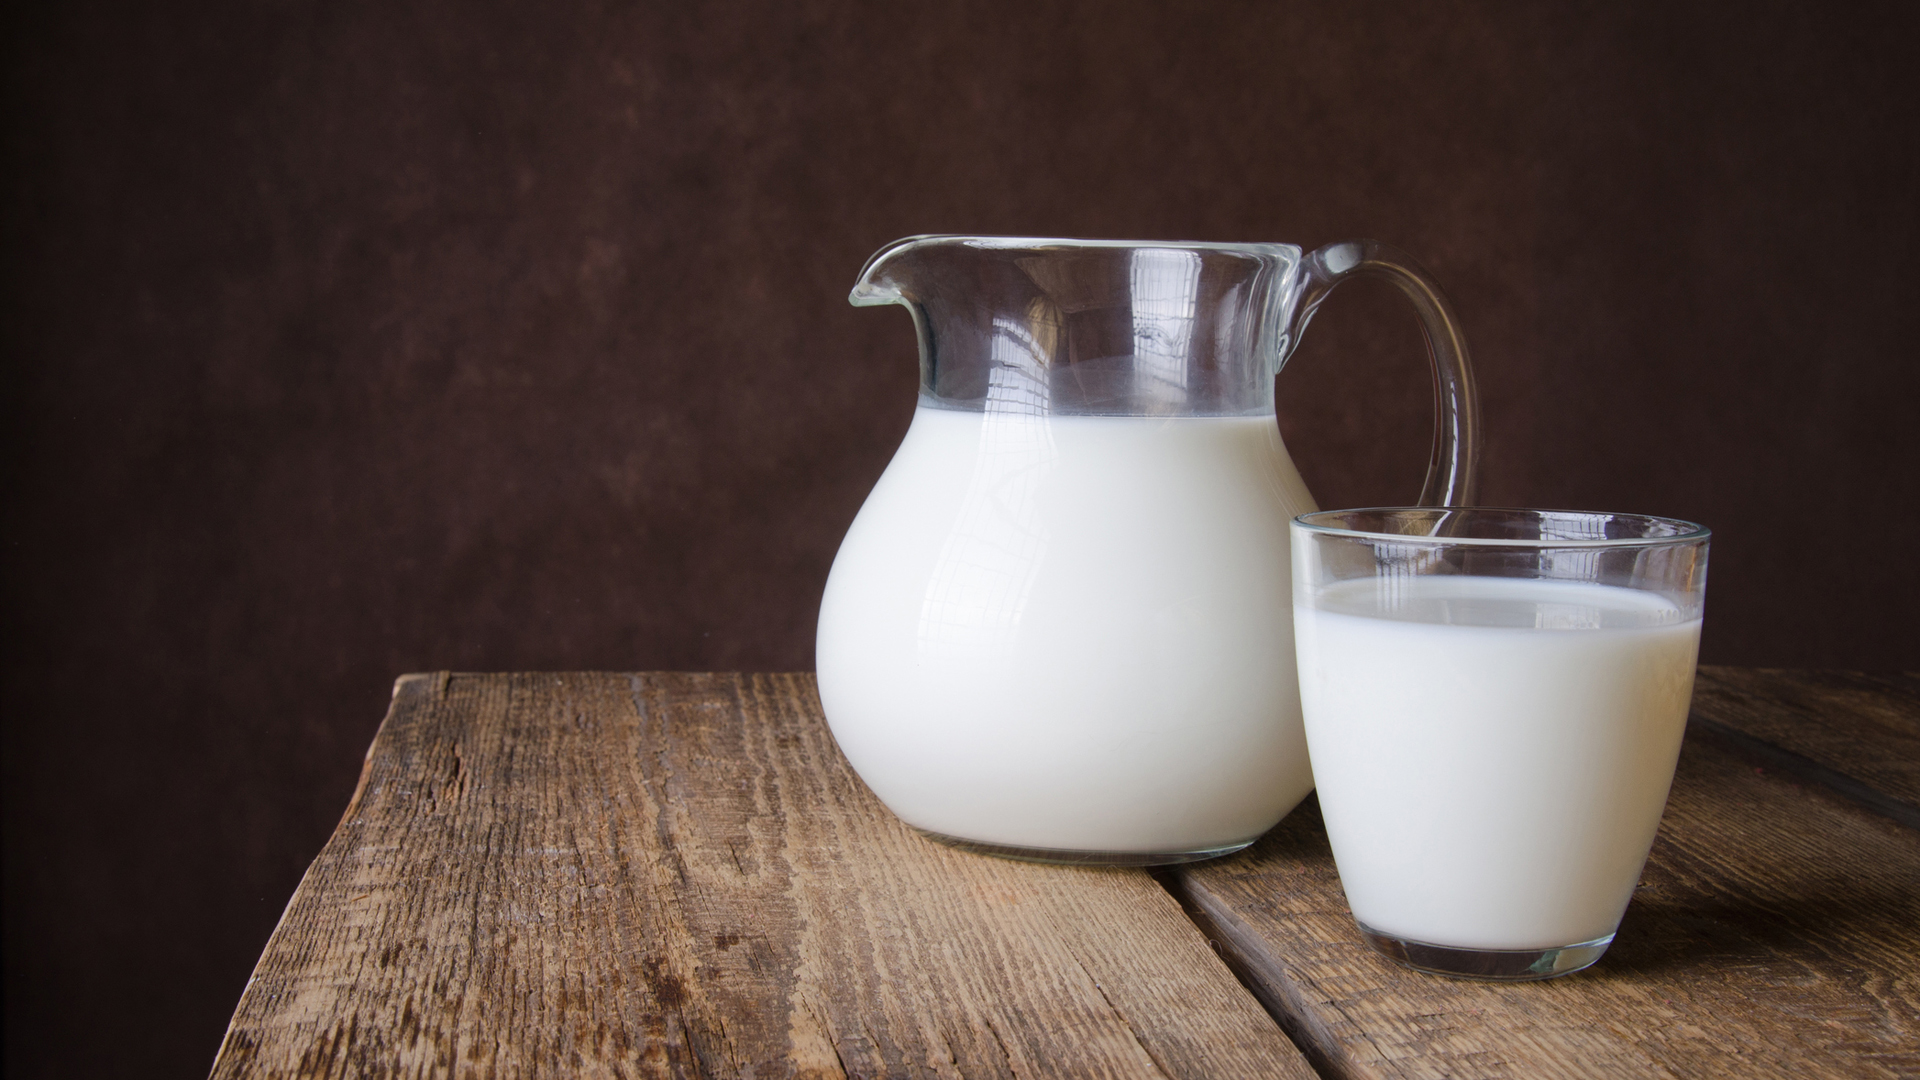 Los lácteos son una tradición en la dieta cotidiana, pero hay que tener cuidado si uno tiene intolerancia a la lactosa